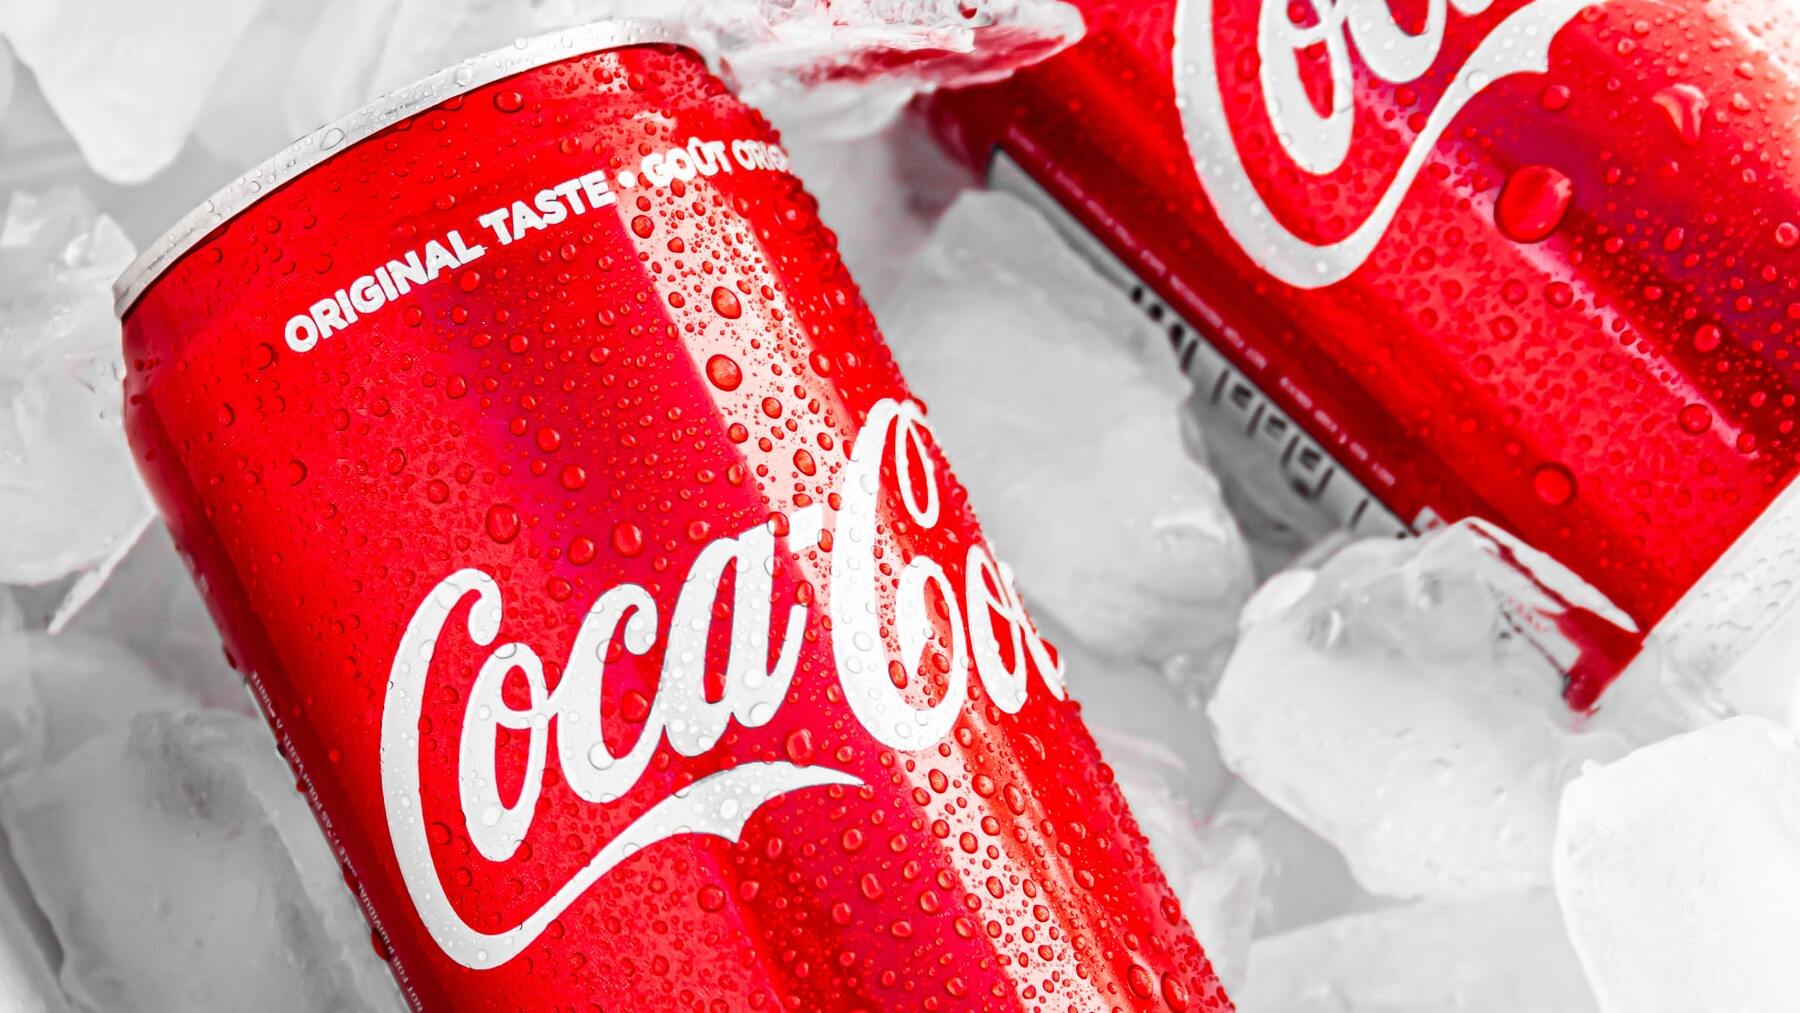 Coca Cola lata 33cl.